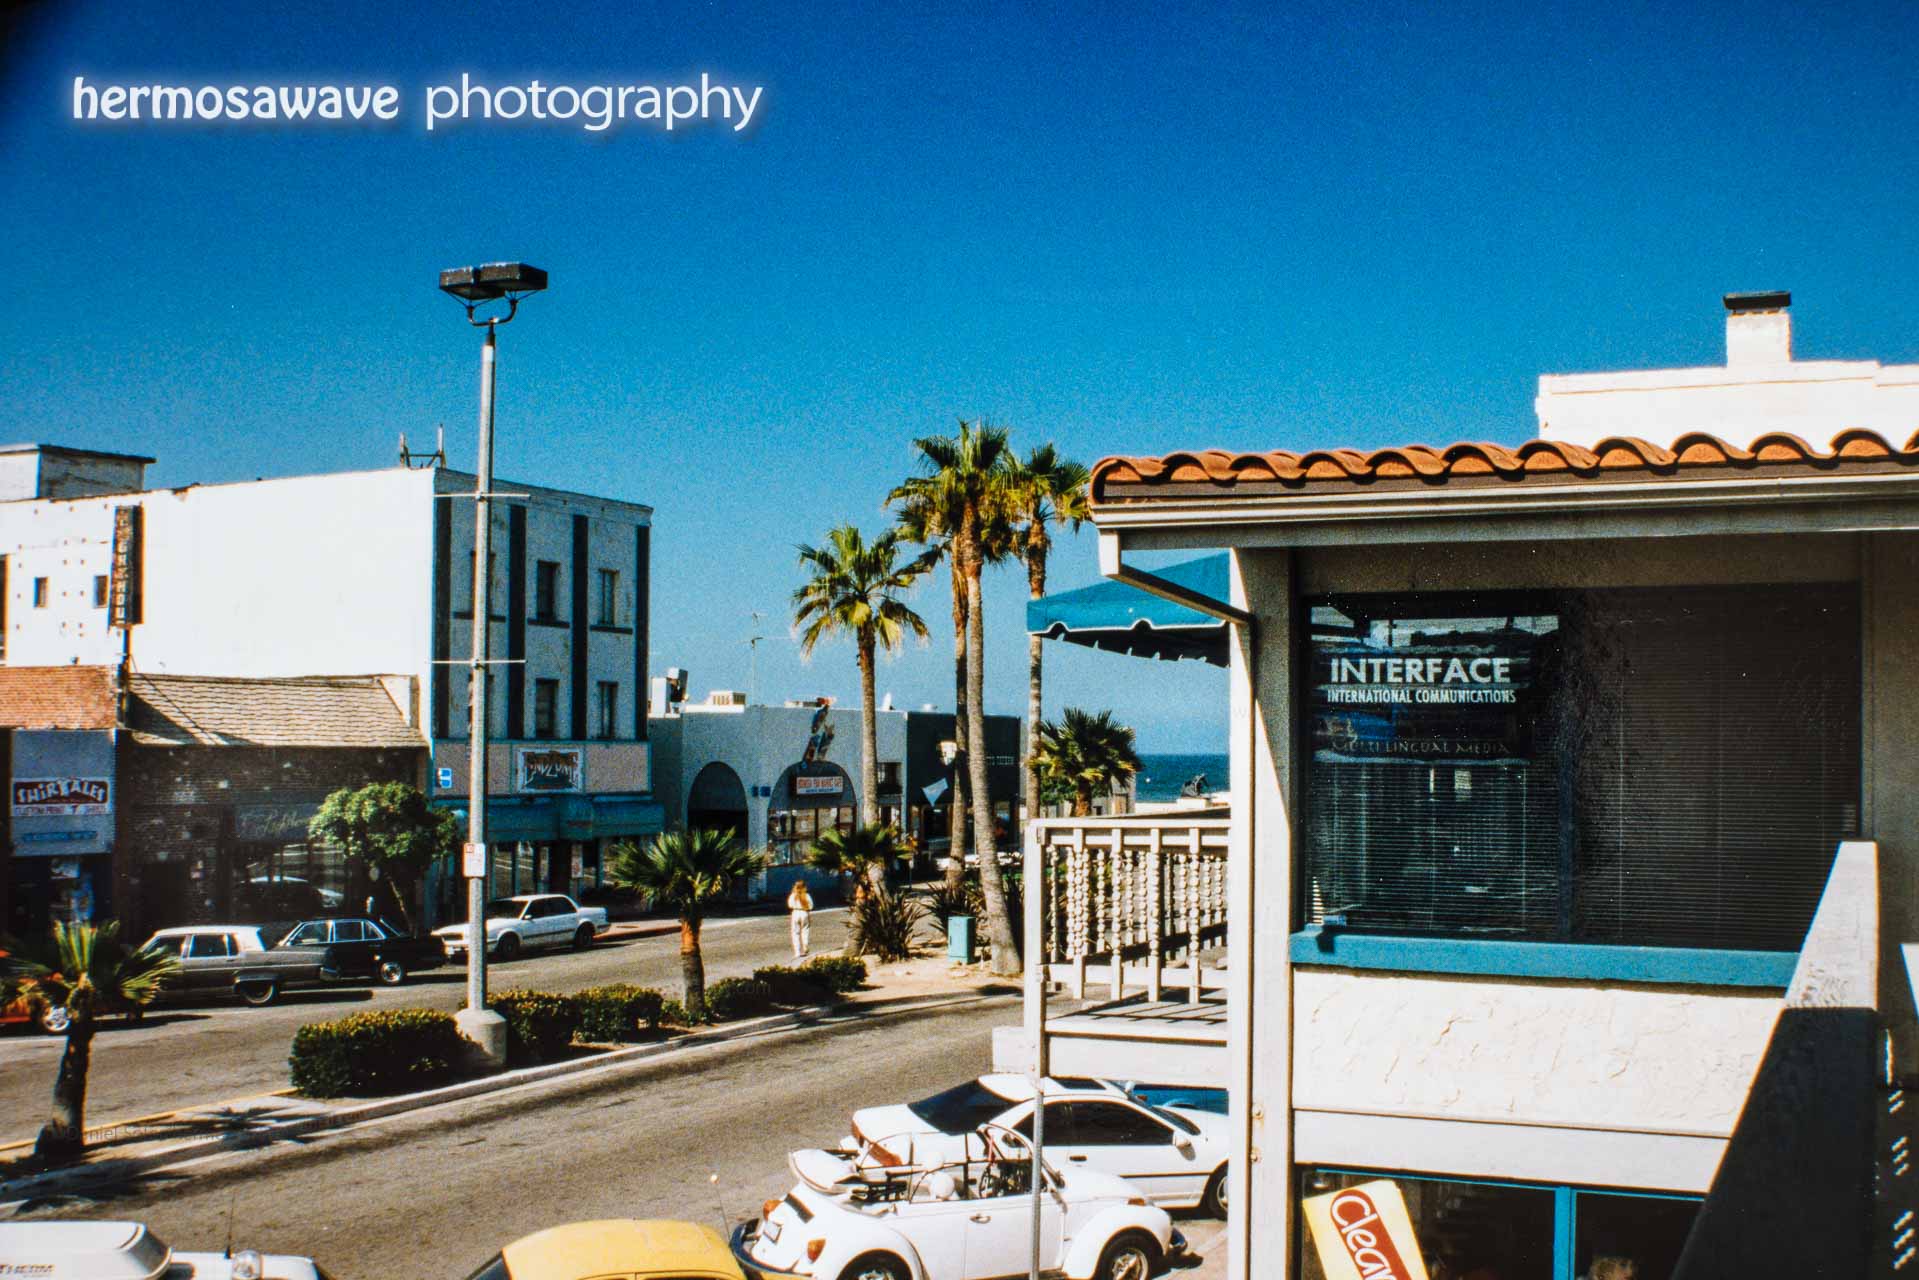 Loreto Plaza and Pier Avenue: 1995